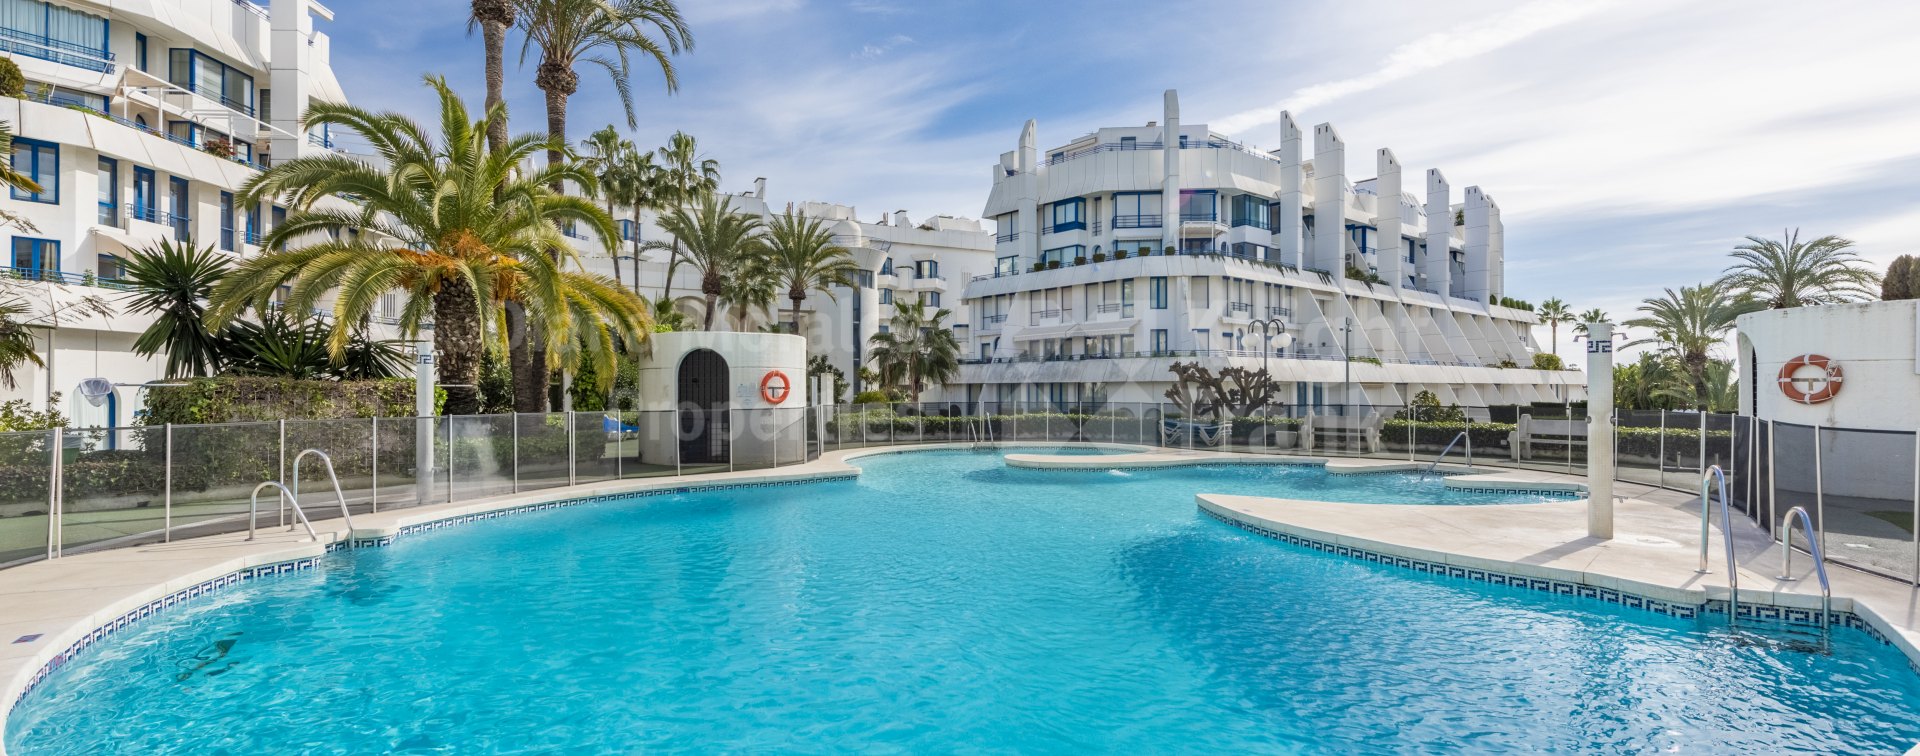 Marbella Golden Mile, Appartement duplex près de la plage